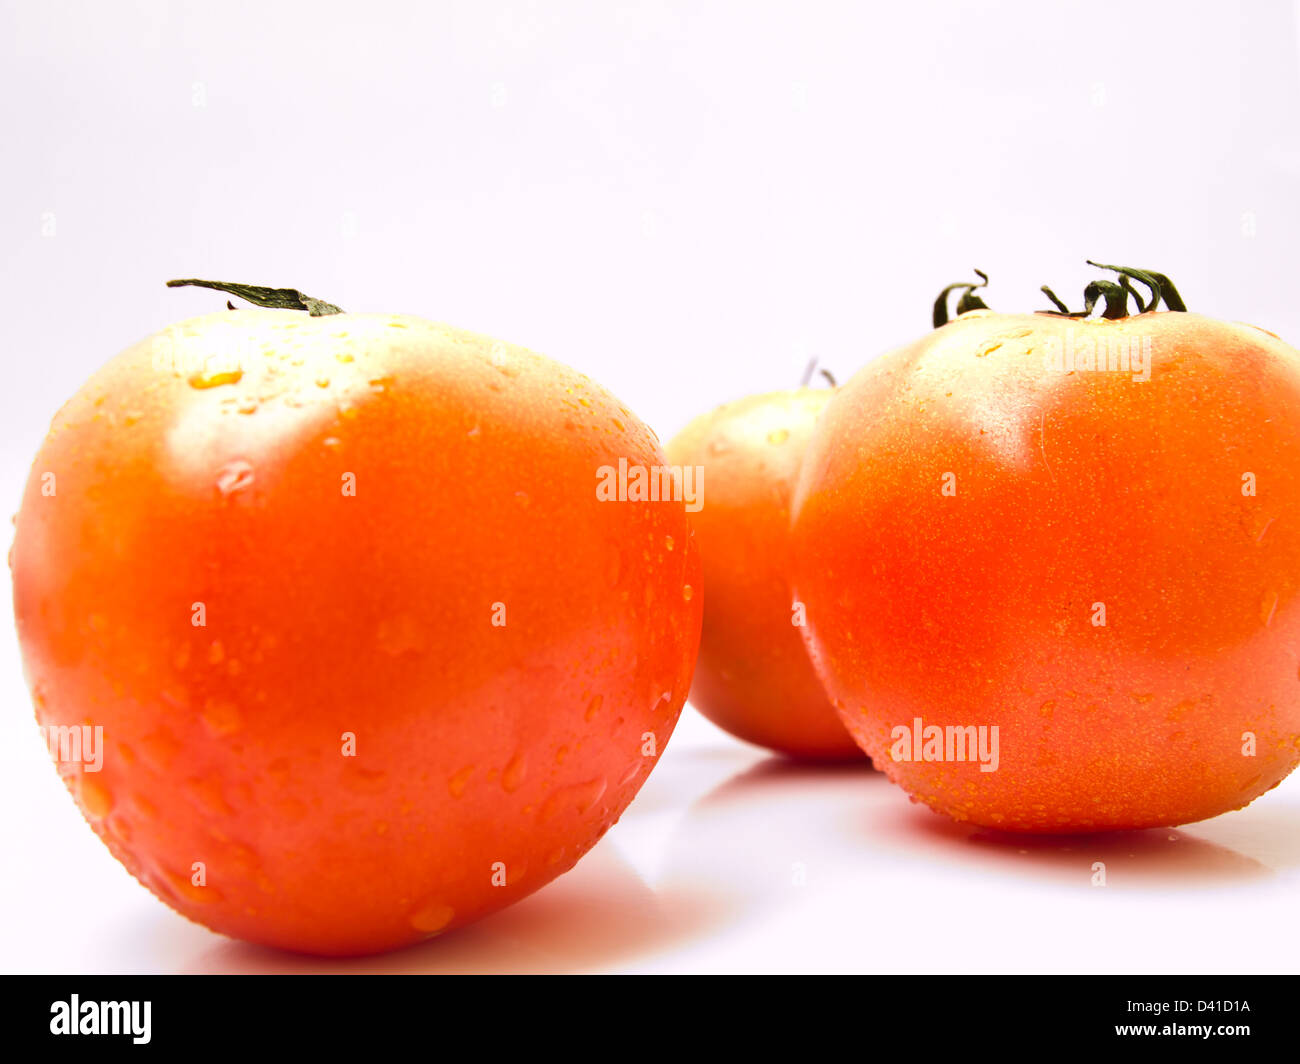 Fresh tomatoes isolated on white background Stock Photo